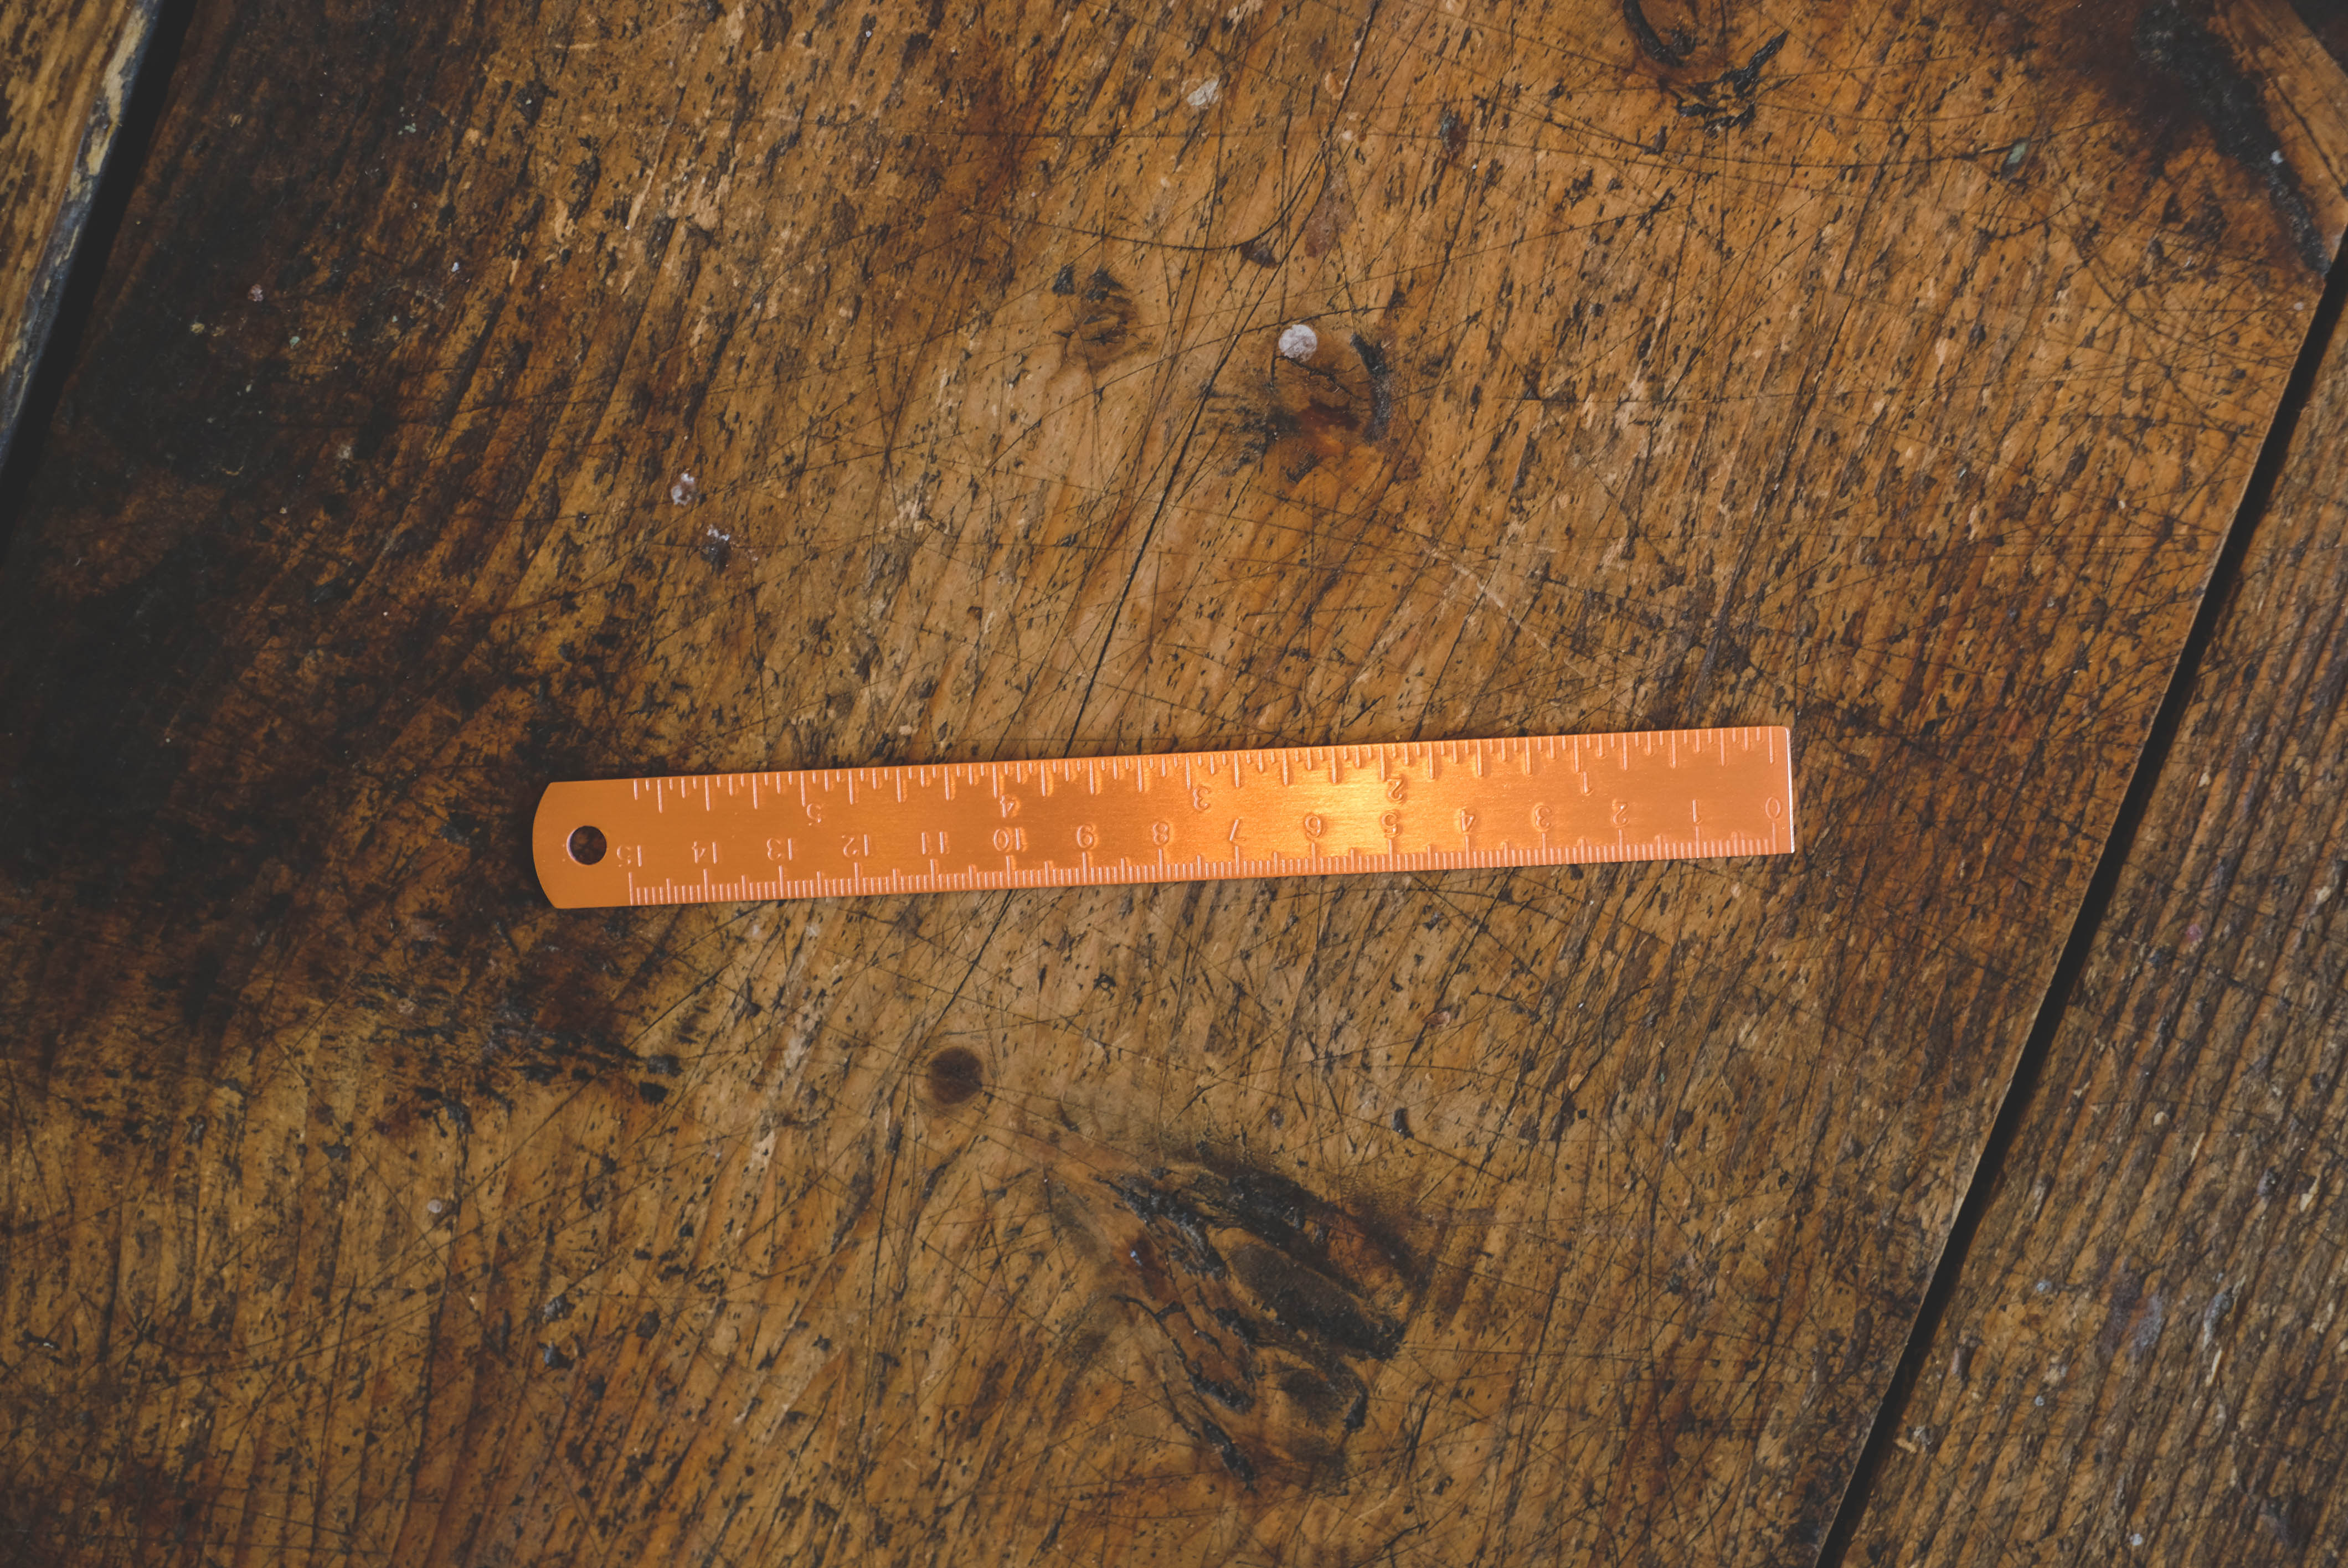 Copper ruler